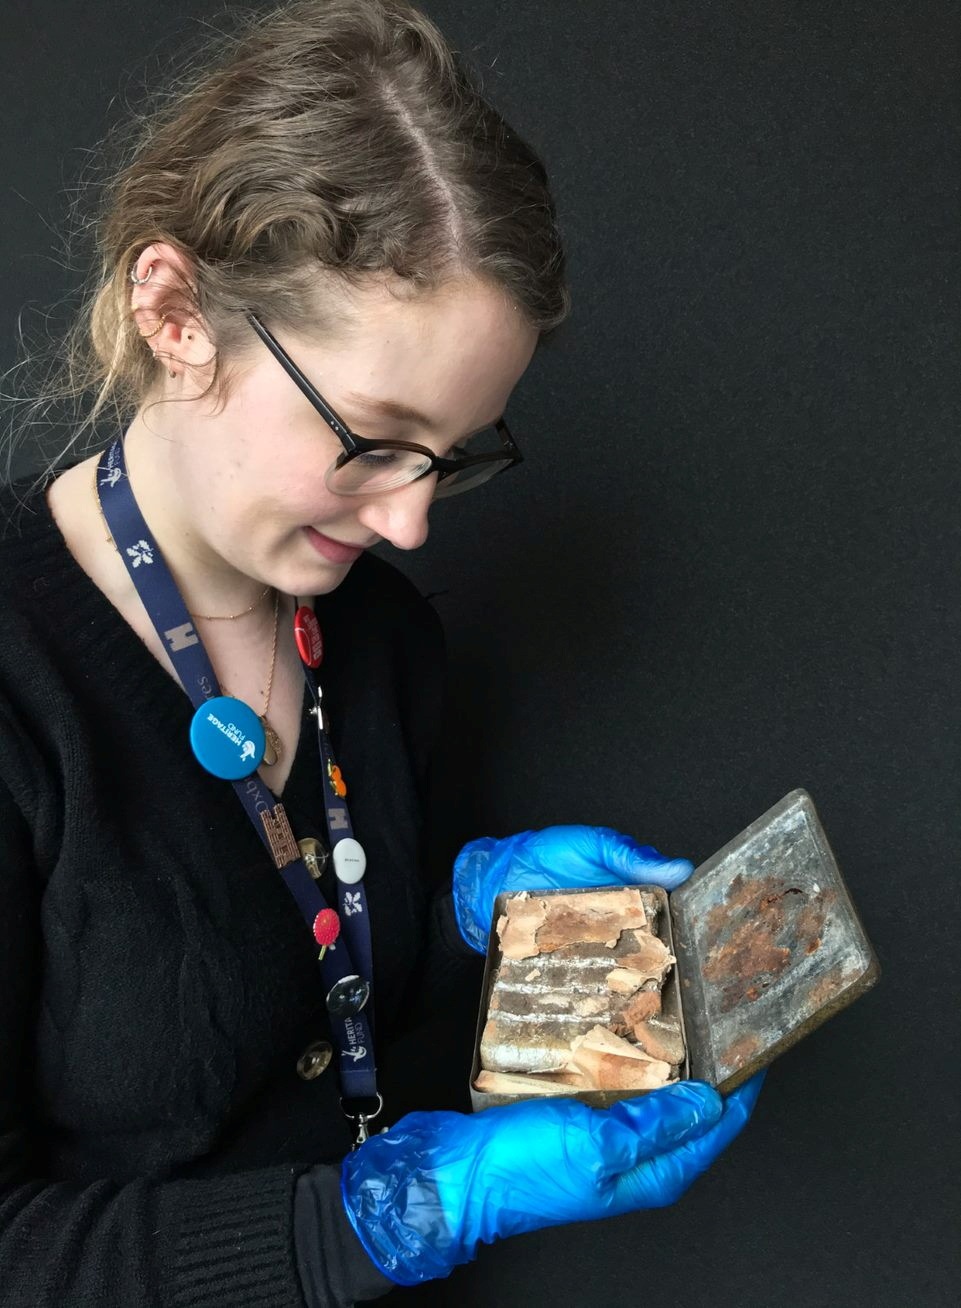 Katherine Bridges, petugas rumah dan koleksi senior di National Trust, memegang sekotak coklat berusia 121 tahun (via REUTERS)